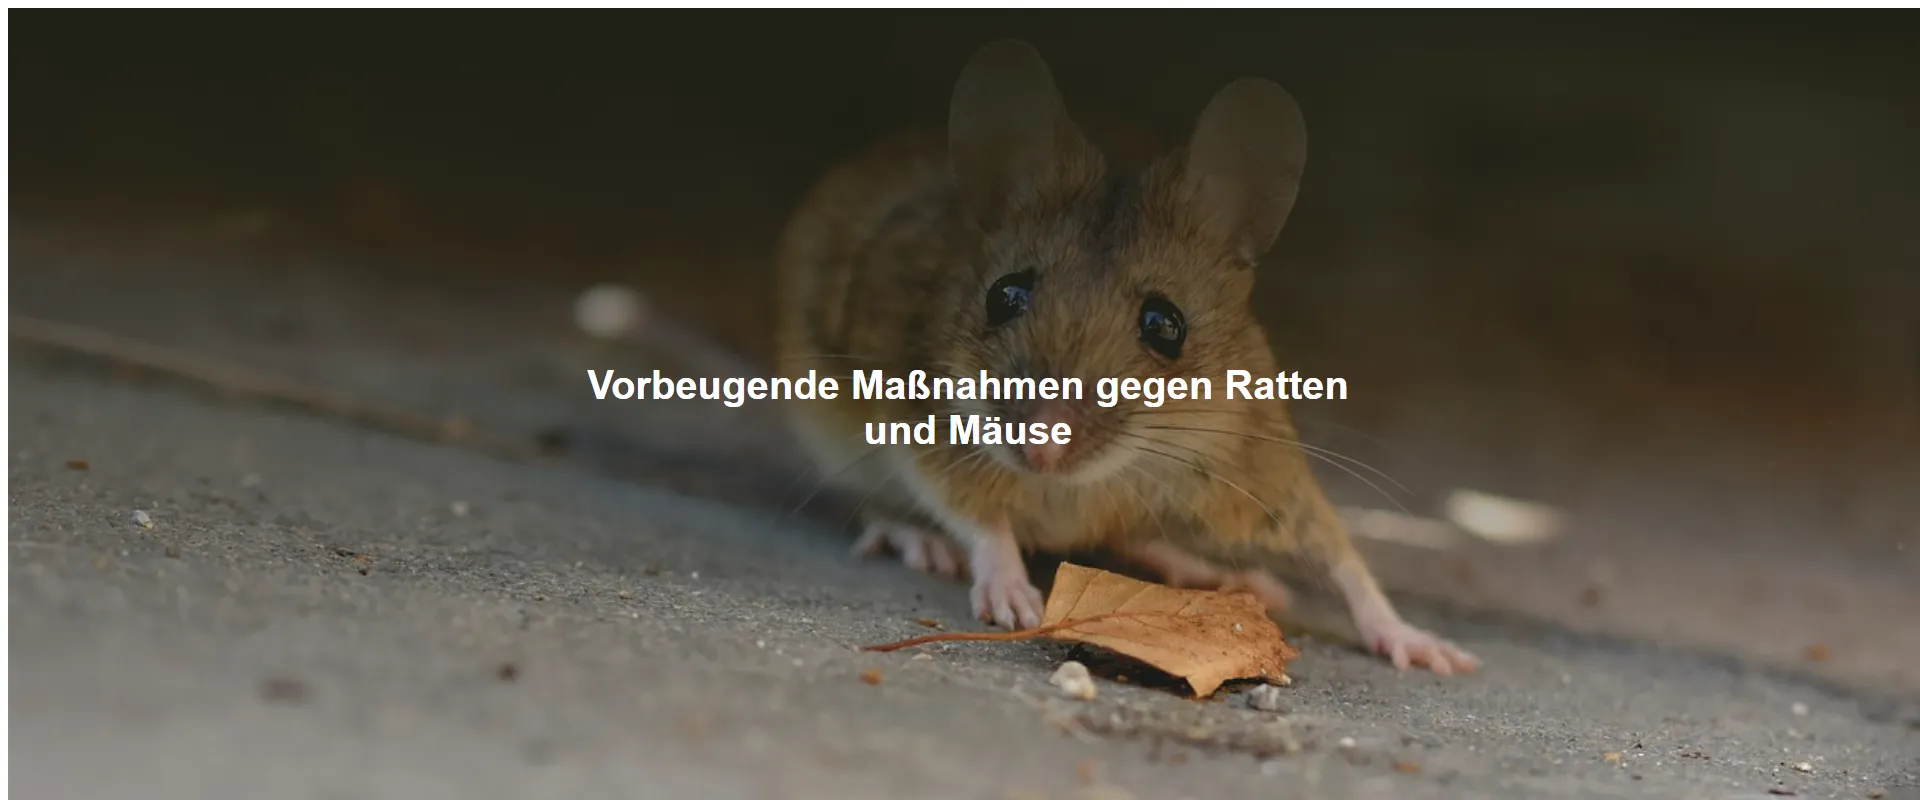 Vorbeugende Maßnahmen gegen Ratten und Mäuse